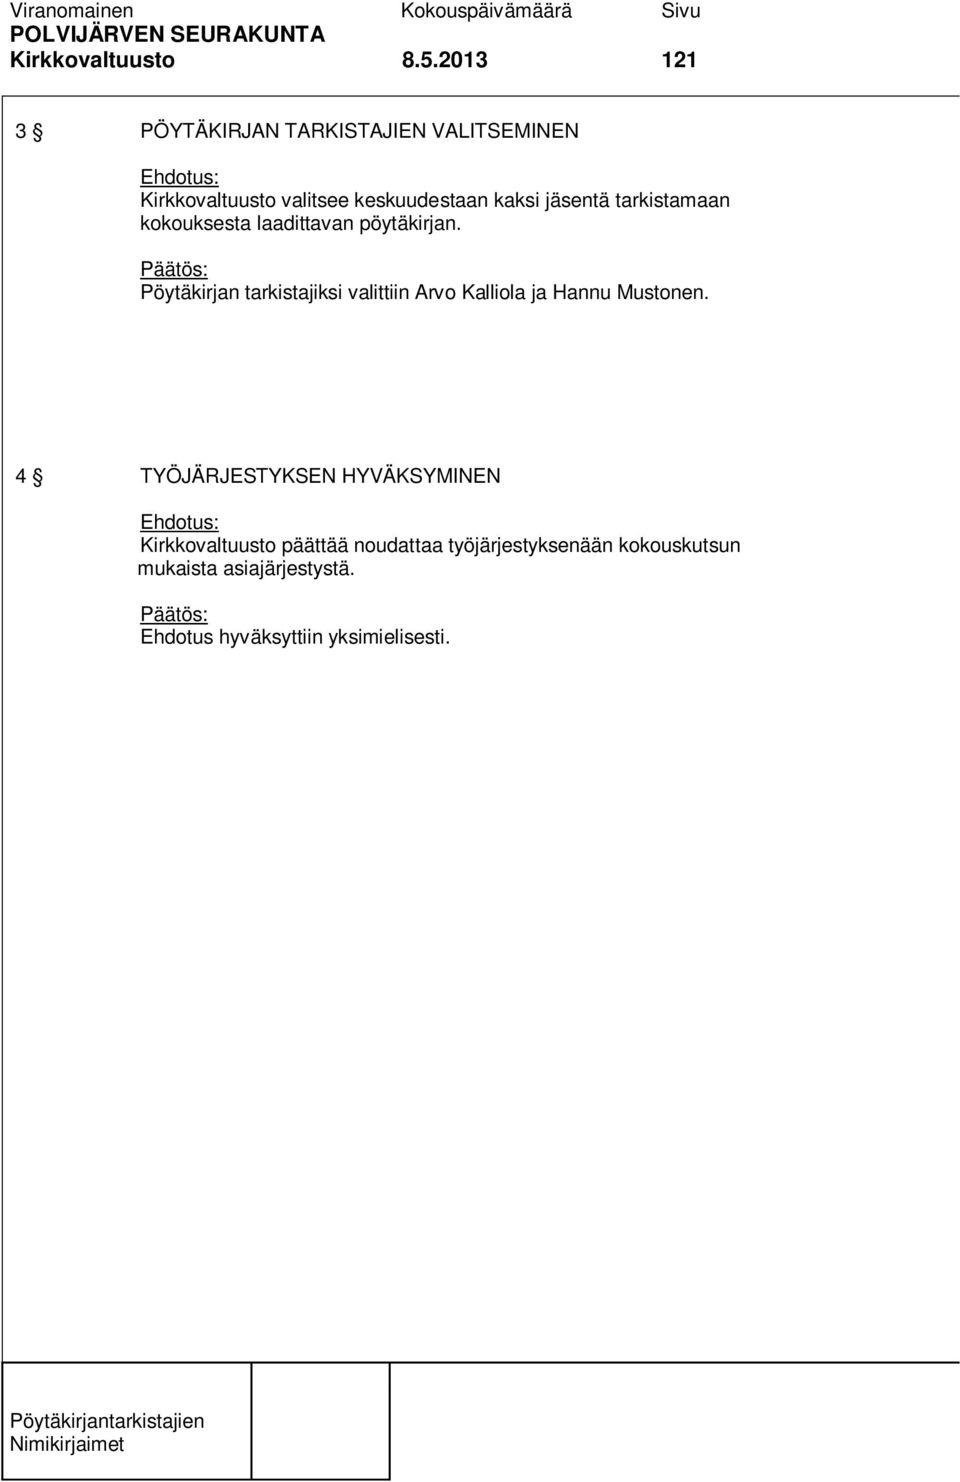 Pöytäkirjan tarkistajiksi valittiin Arvo Kalliola ja Hannu Mustonen.